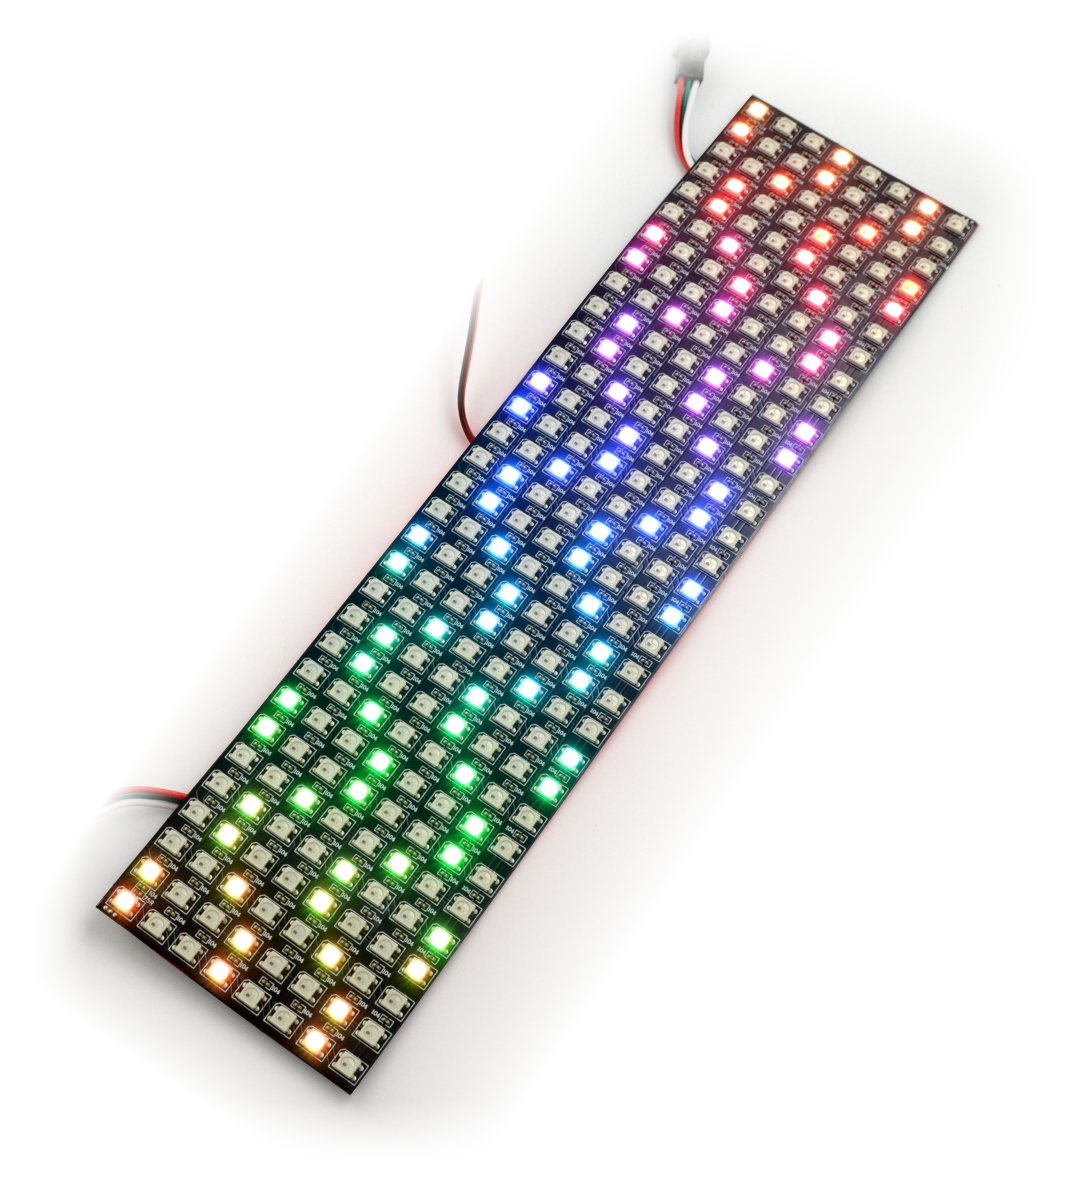 Elastyczna matryca 8x32 - 256 LED RGB - WS2812B indywidualnie adresowane